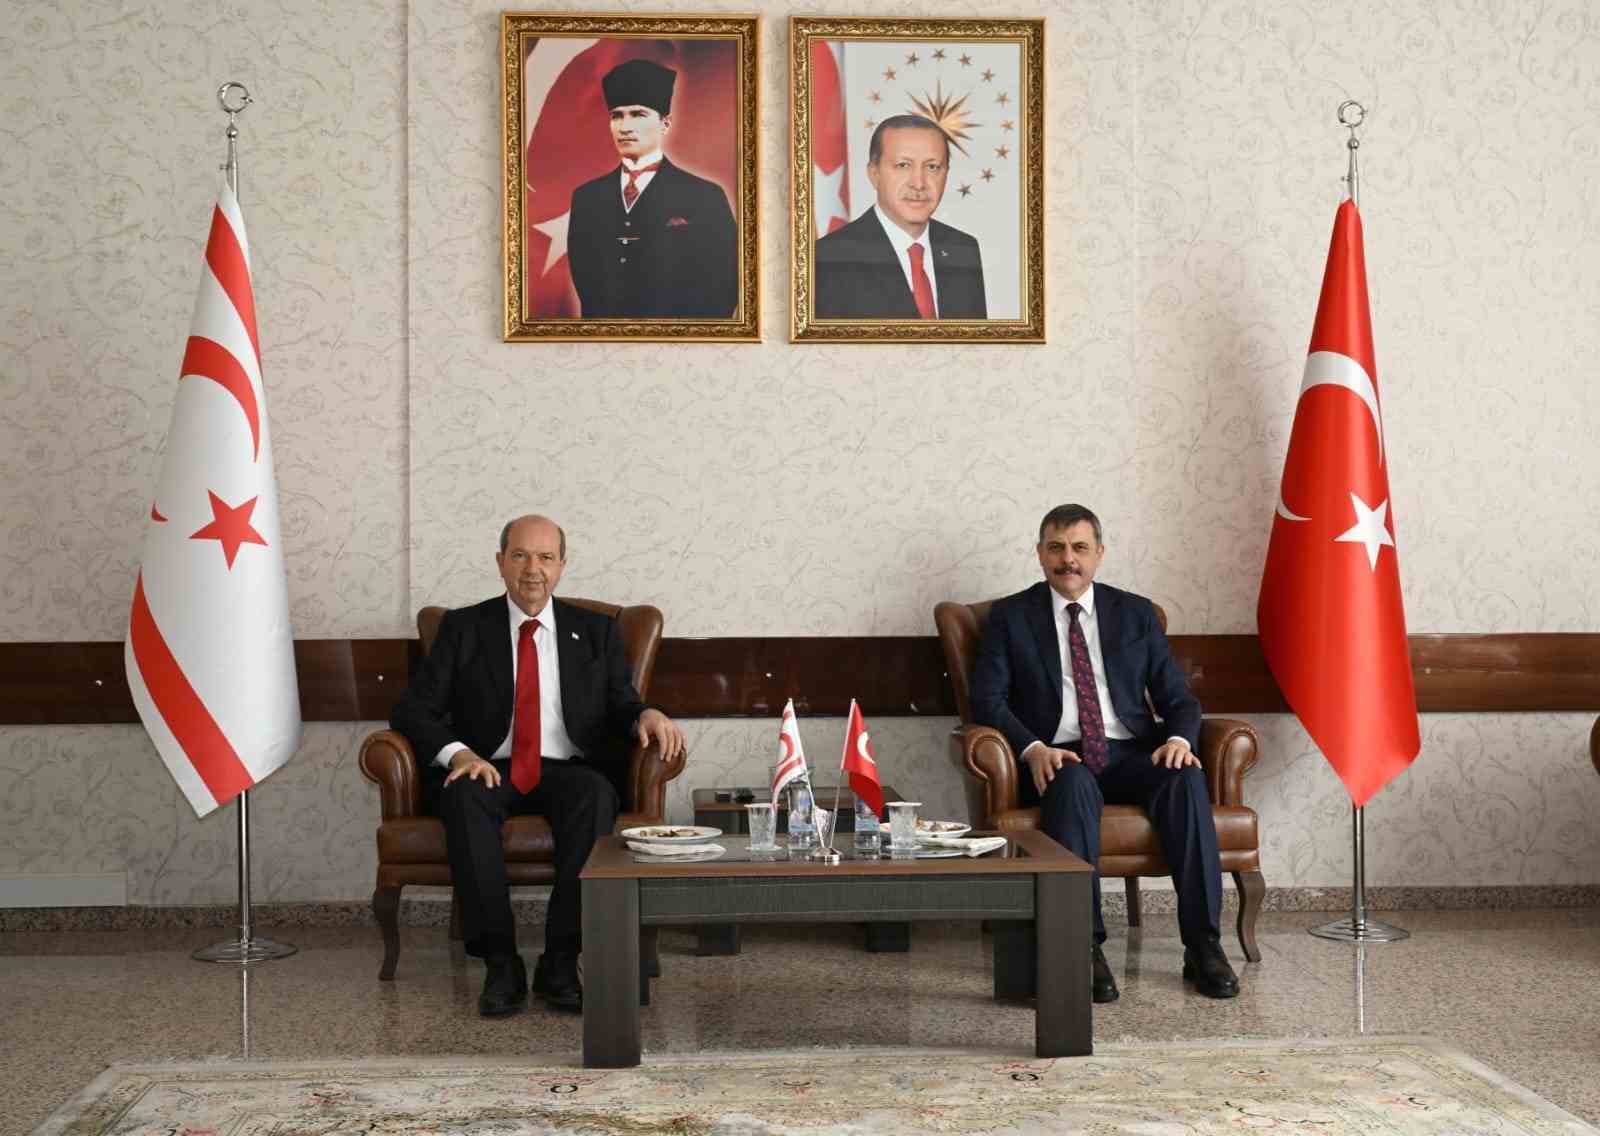 KKTC Cumhurbaşkanı Ersin Tatar Erzurum’da